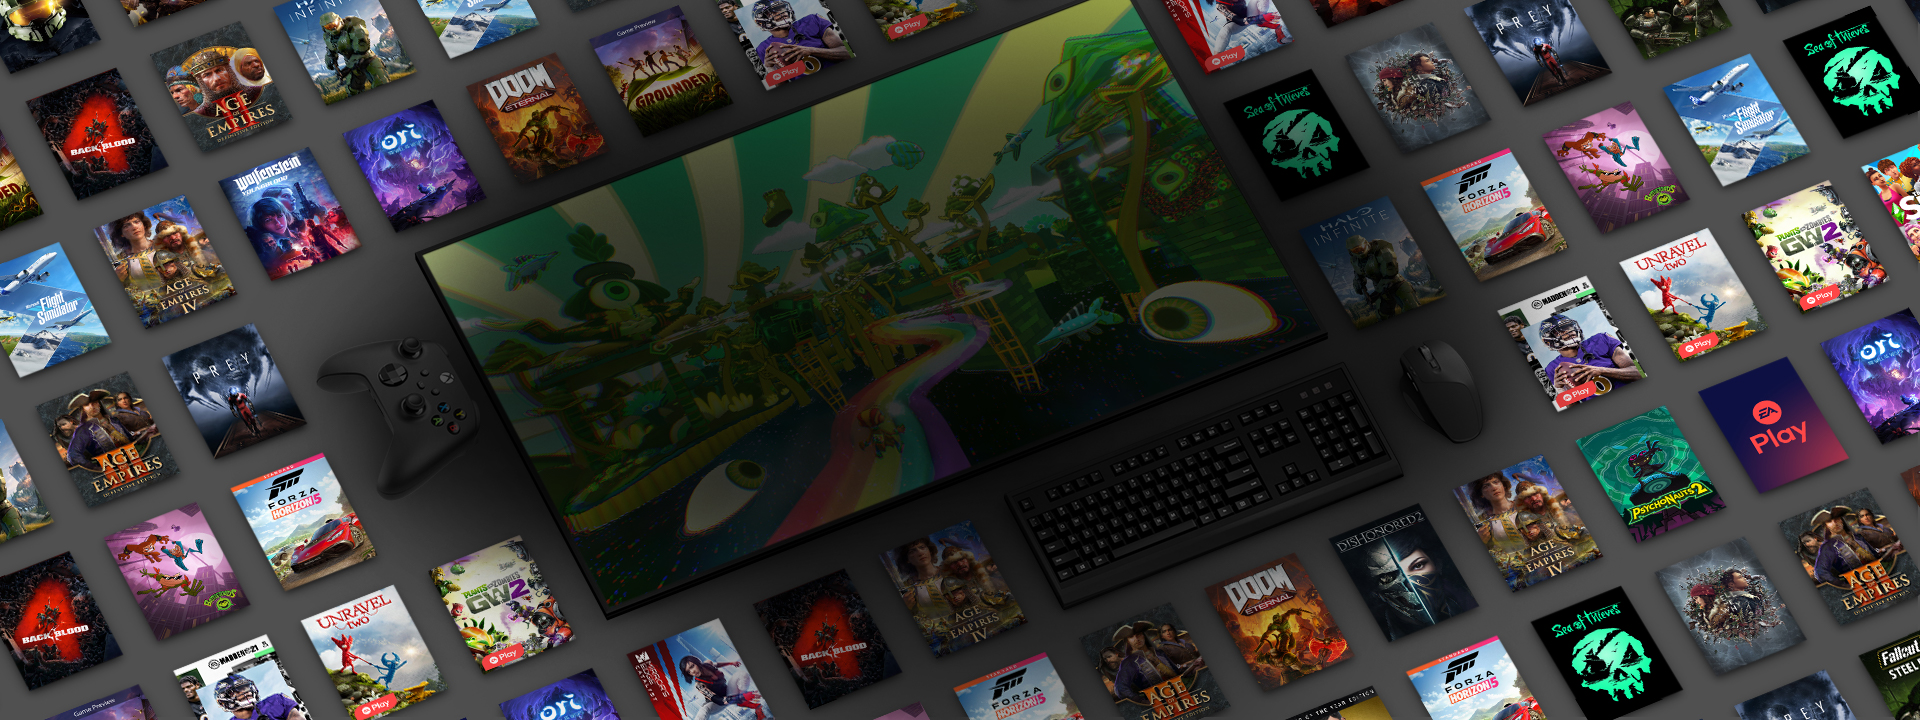 Uma série de fotos de capas de jogos em torno de um monitor de PC mostrando uma cena de Psychonauts 2